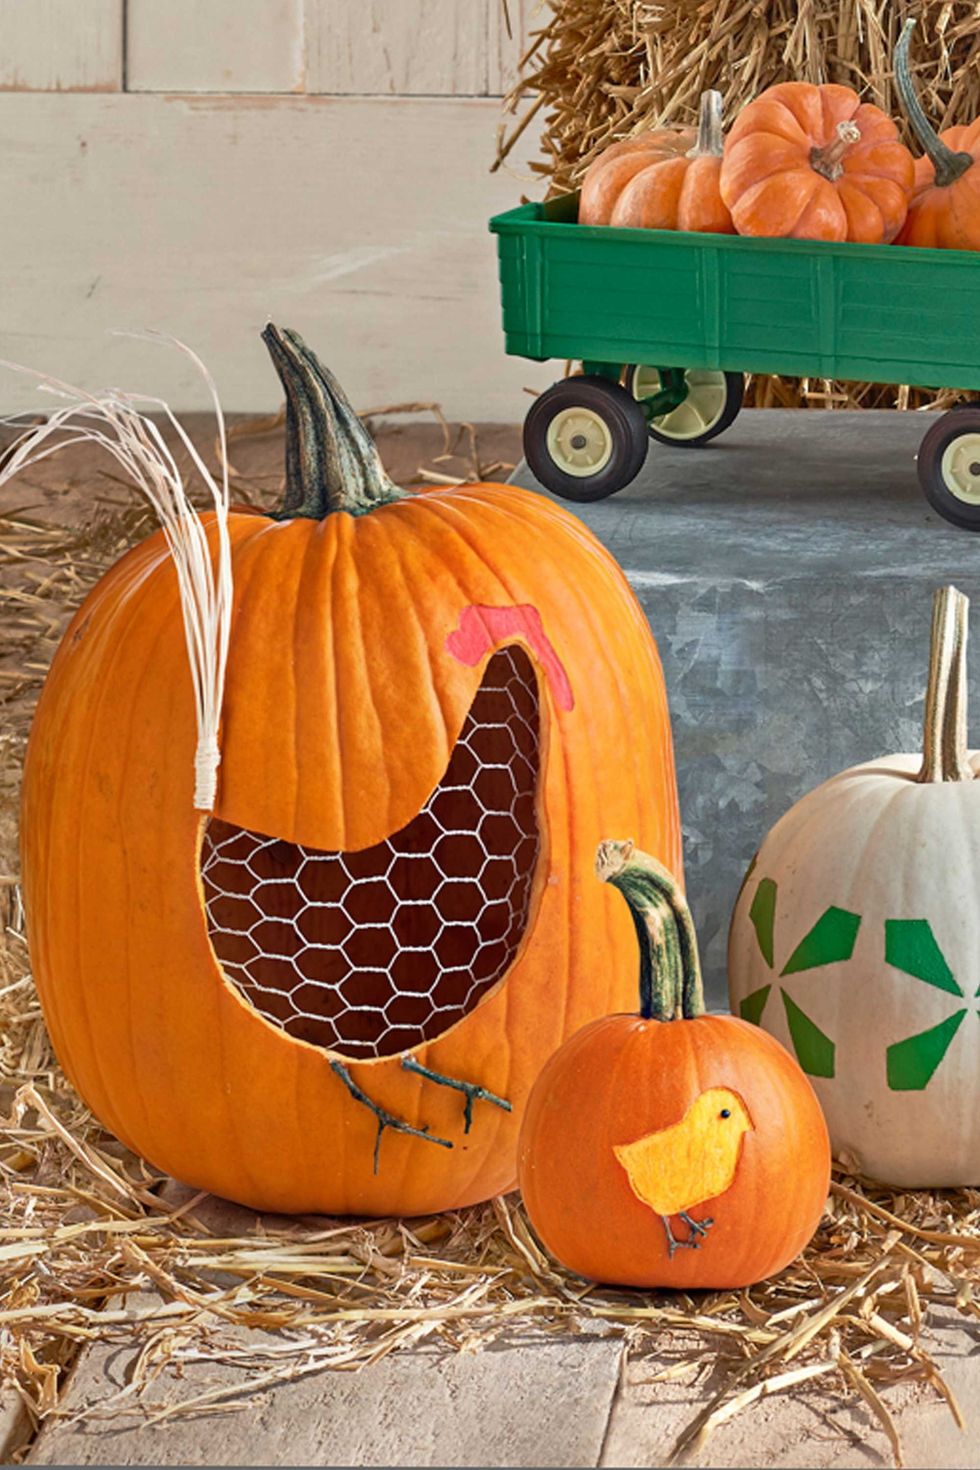 hen and chicks pumpkin carving idea